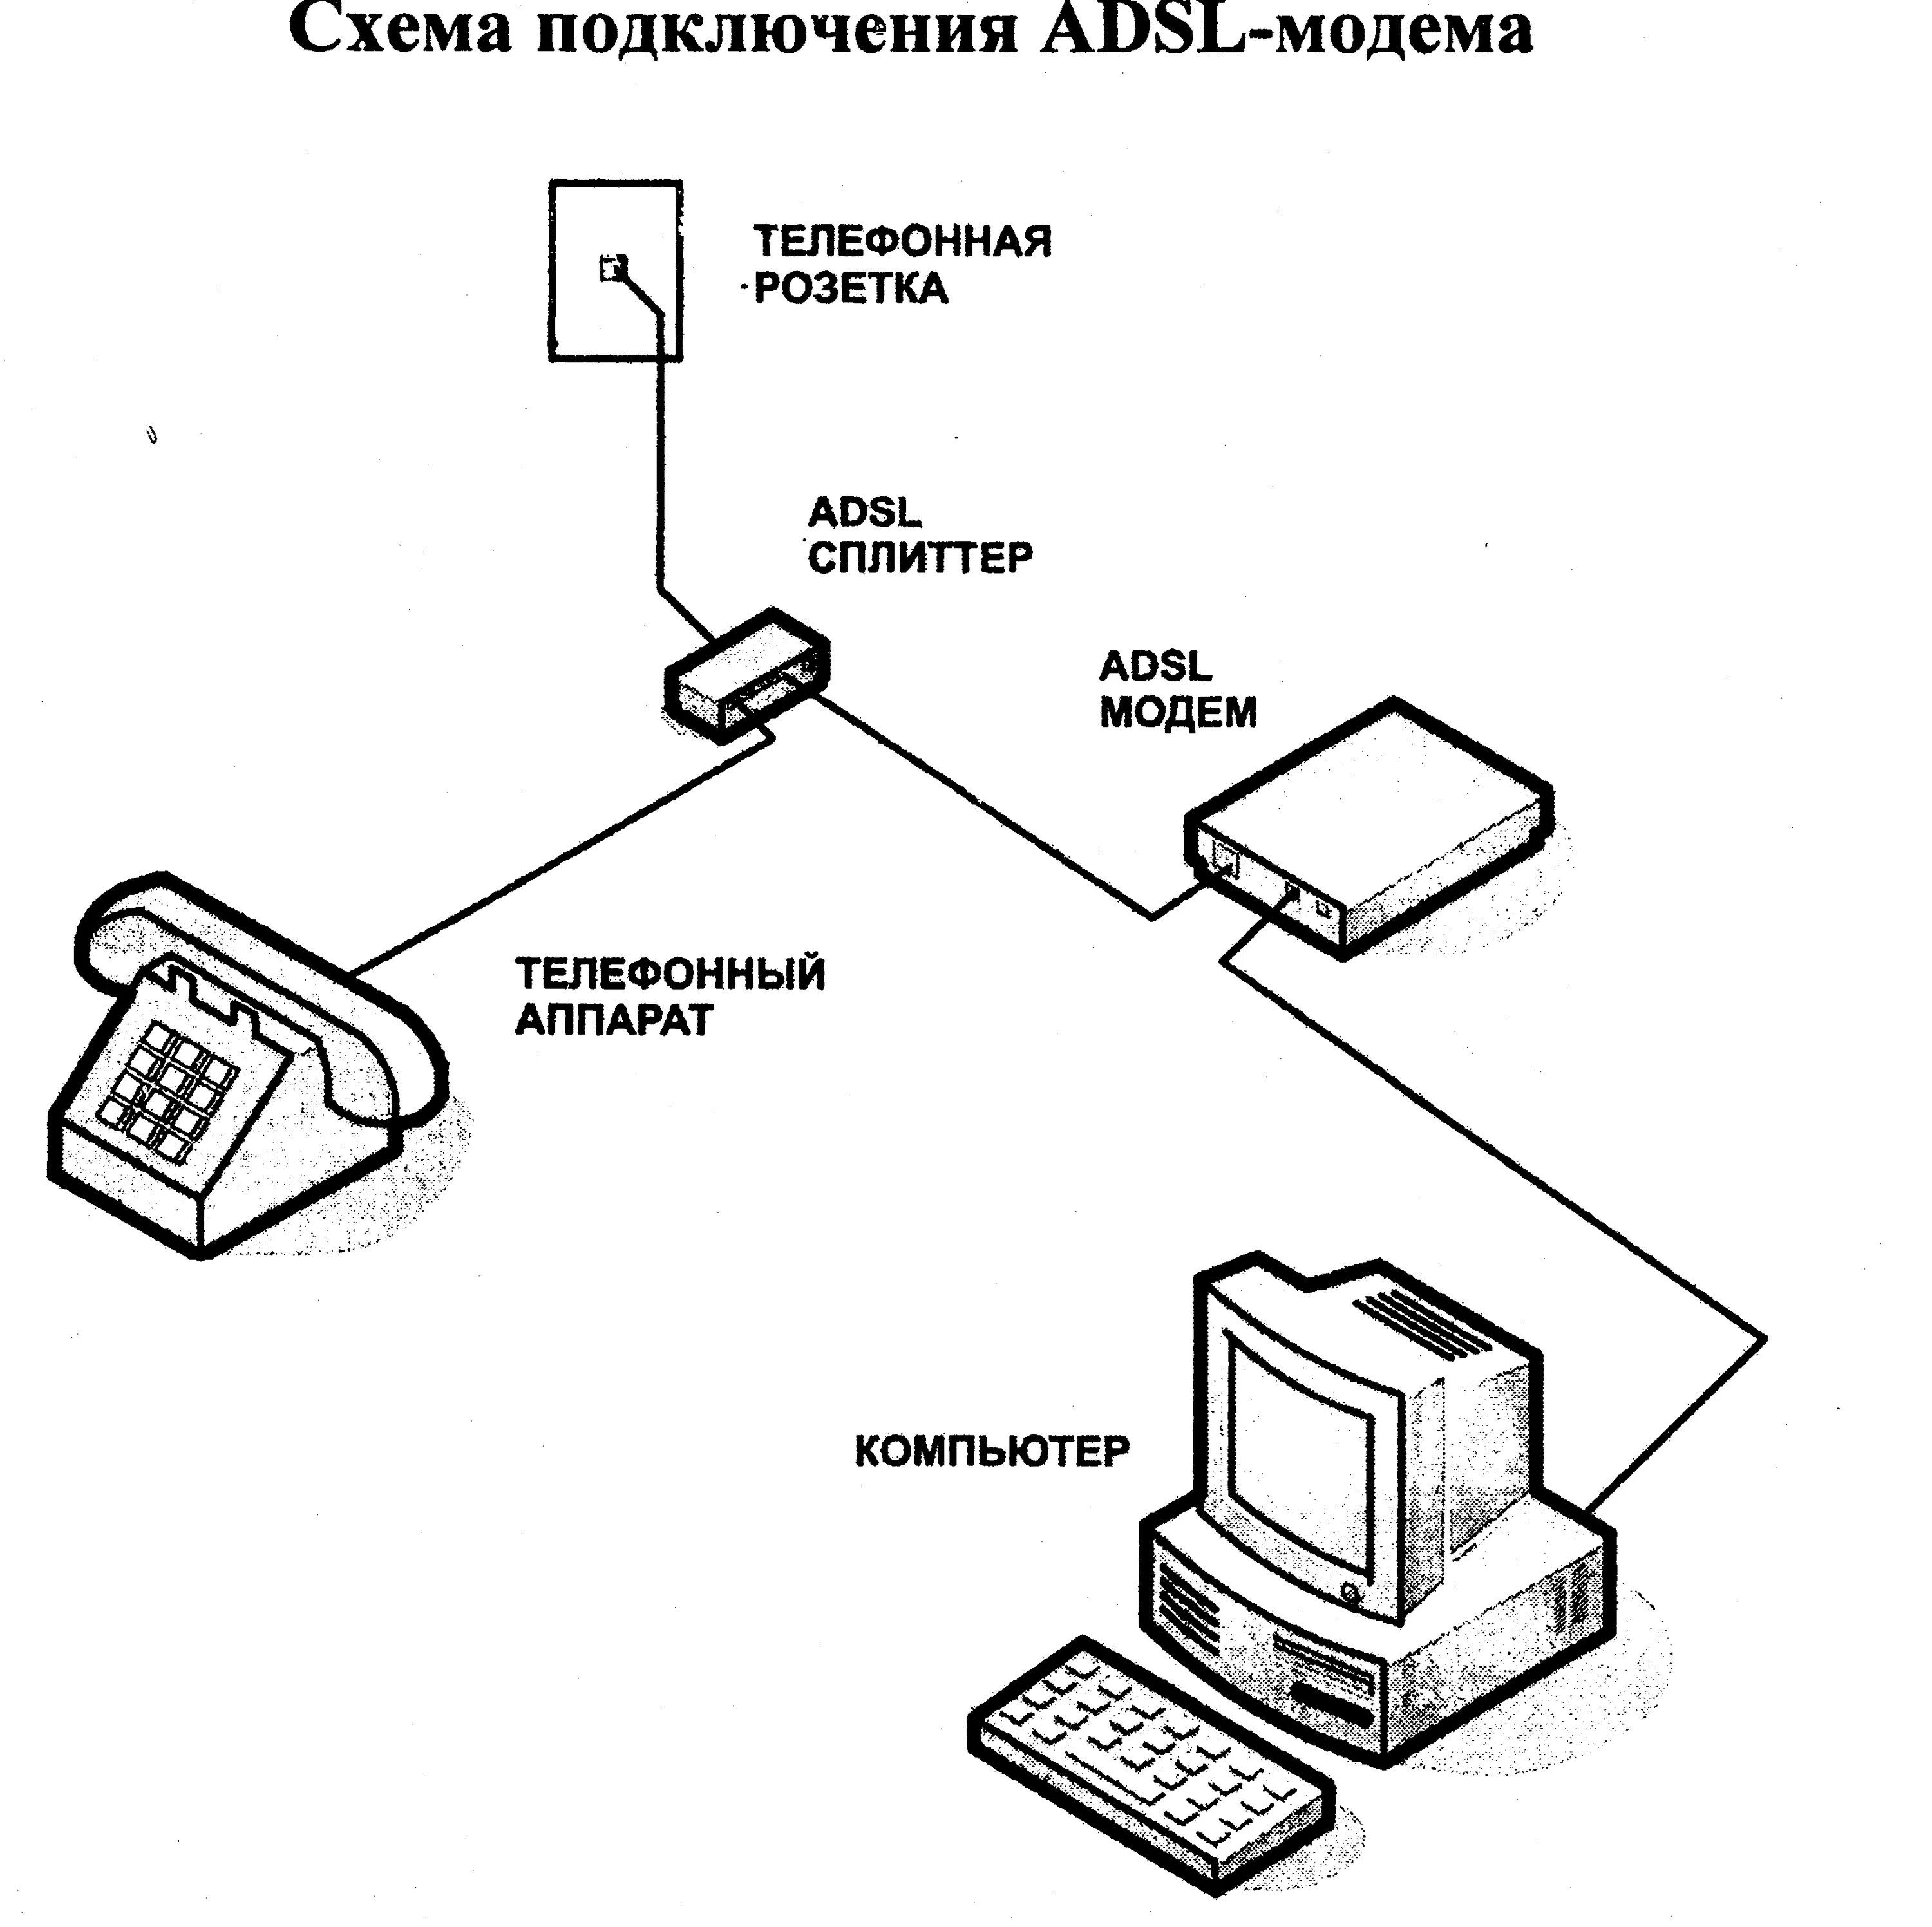 Подключения пк через телефон. Схема соединения телефонного кабеля с модемом. Схема ADSL модема. Схема подключения АДСЛ модема. Схема подключения ADSL модема к телефонной линии.